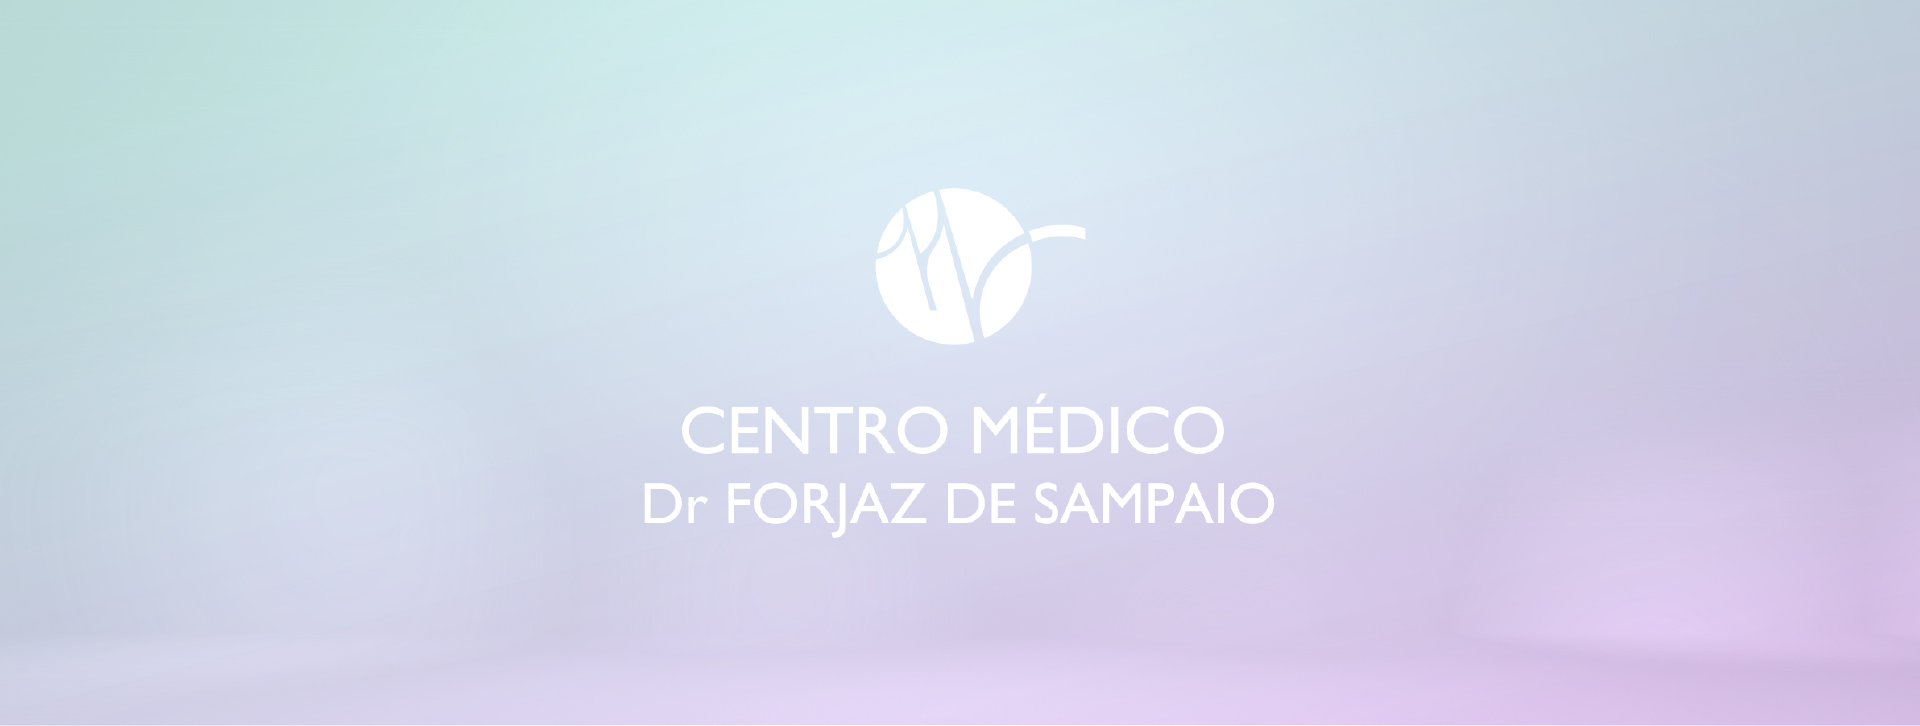 Centro Médico Forjaz Sampaio